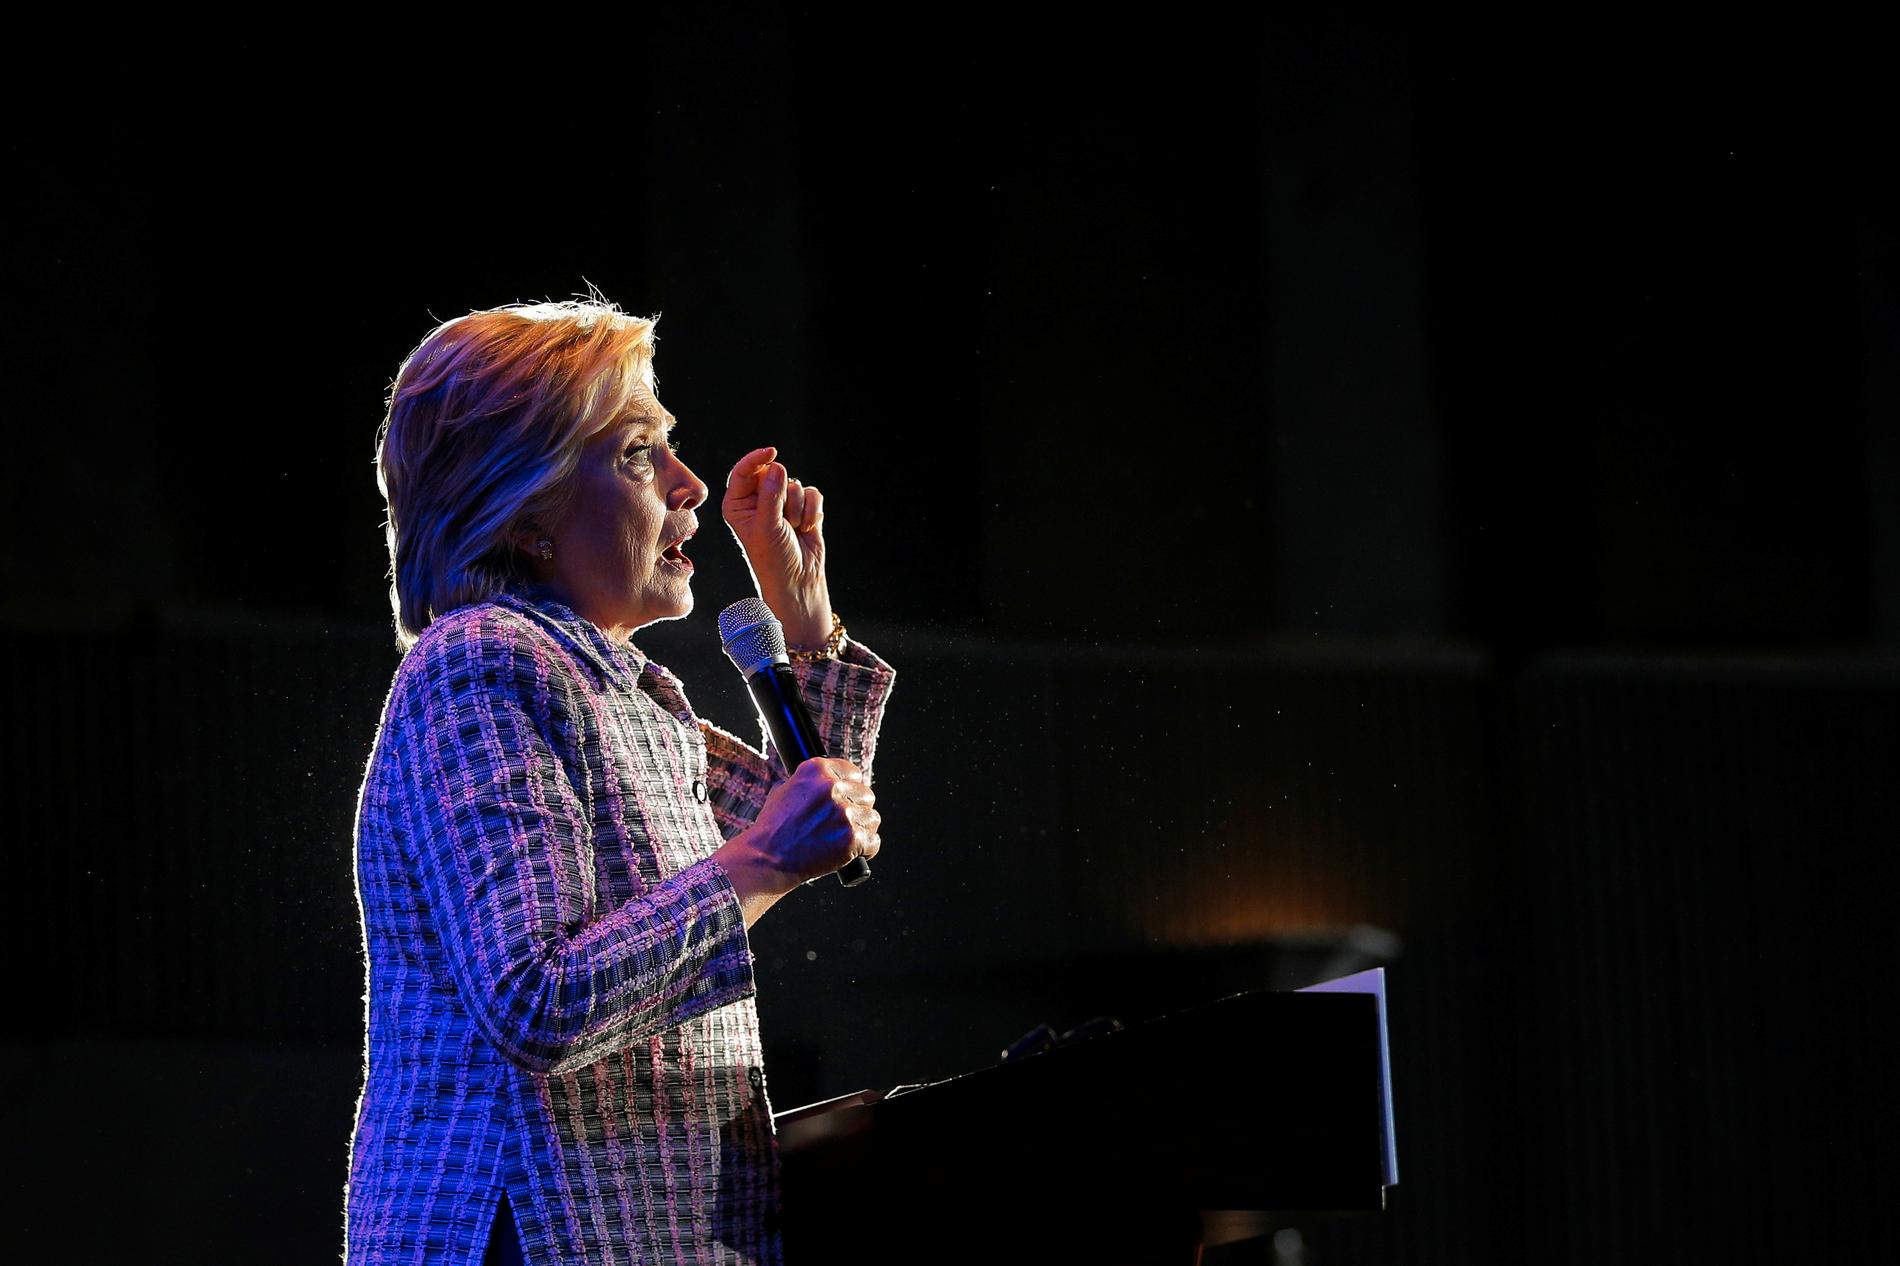 Inför Demokraternas konvent säger Hillary Clinton att hon haft det tufft genom hela valrörelsen. ”Folk anklagar gärna mig på ett beklagligt vis”, sa hon till CBS.